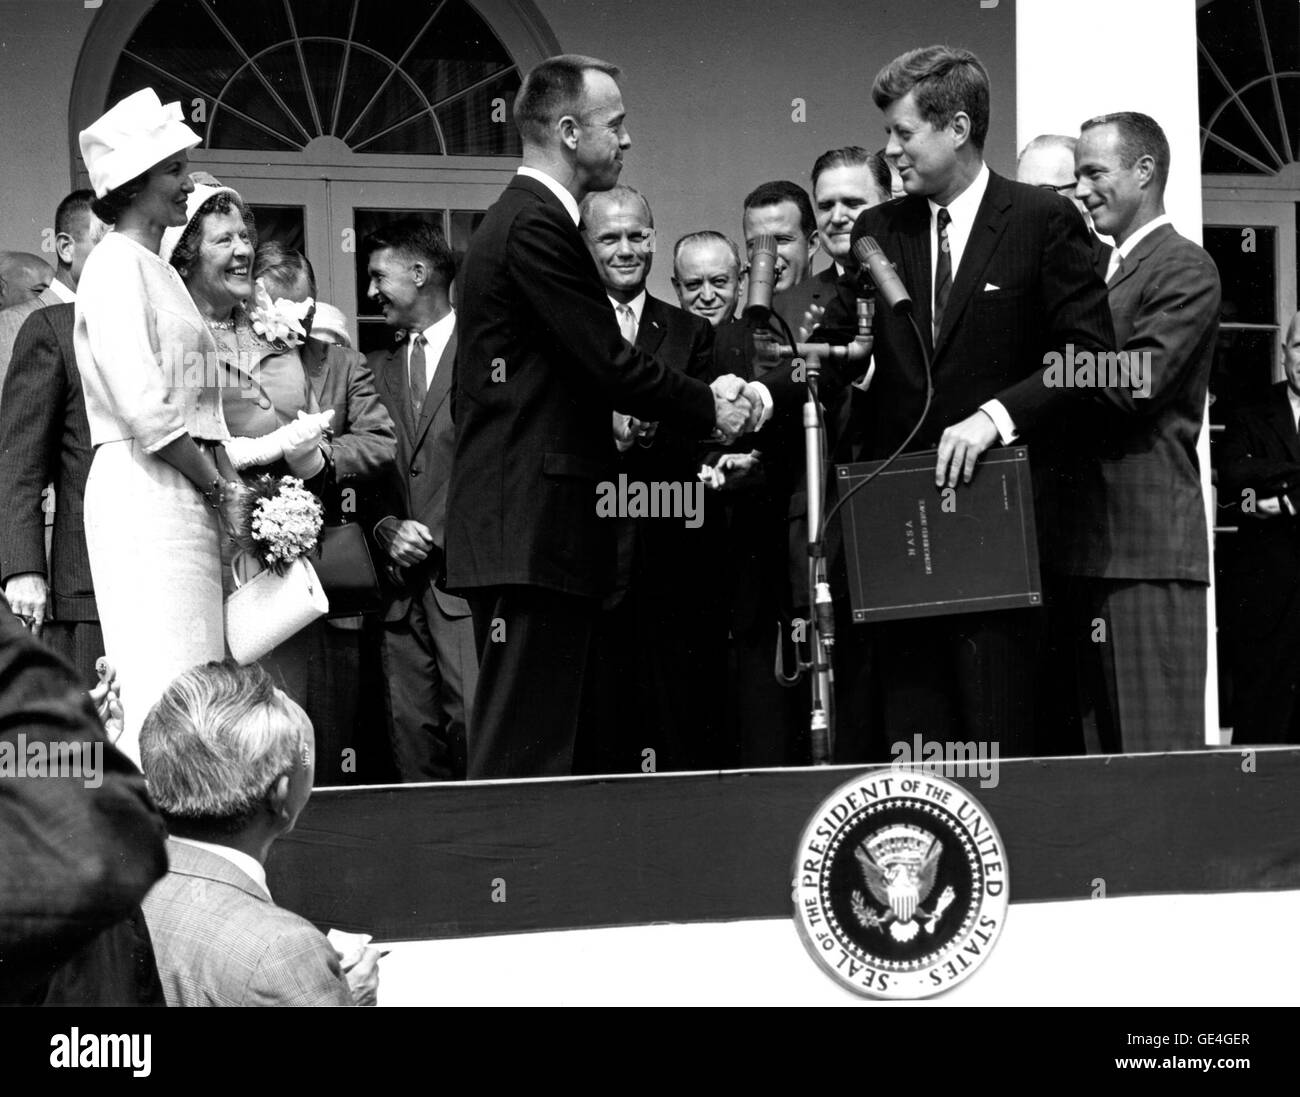 Le président John F. Kennedy félicite l'astronaute Alan B. Shepard, Jr., le premier Américain dans l'espace, sur son centre historique 5 mai 1961 promenade en liberté 7 satellites et le présente avec la NASA Distinguished Service Medal. La cérémonie a eu lieu sur la pelouse de la Maison Blanche. Shepard's wife, Louise (à gauche en robe blanche et un chapeau), et sa mère étaient présents ainsi que les six autres astronautes de la NASA et le mercure, certains fonctionnaires visibles dans l'arrière-plan. Image #  : 1961ADM-13 Date : 8 mai 1961 Banque D'Images